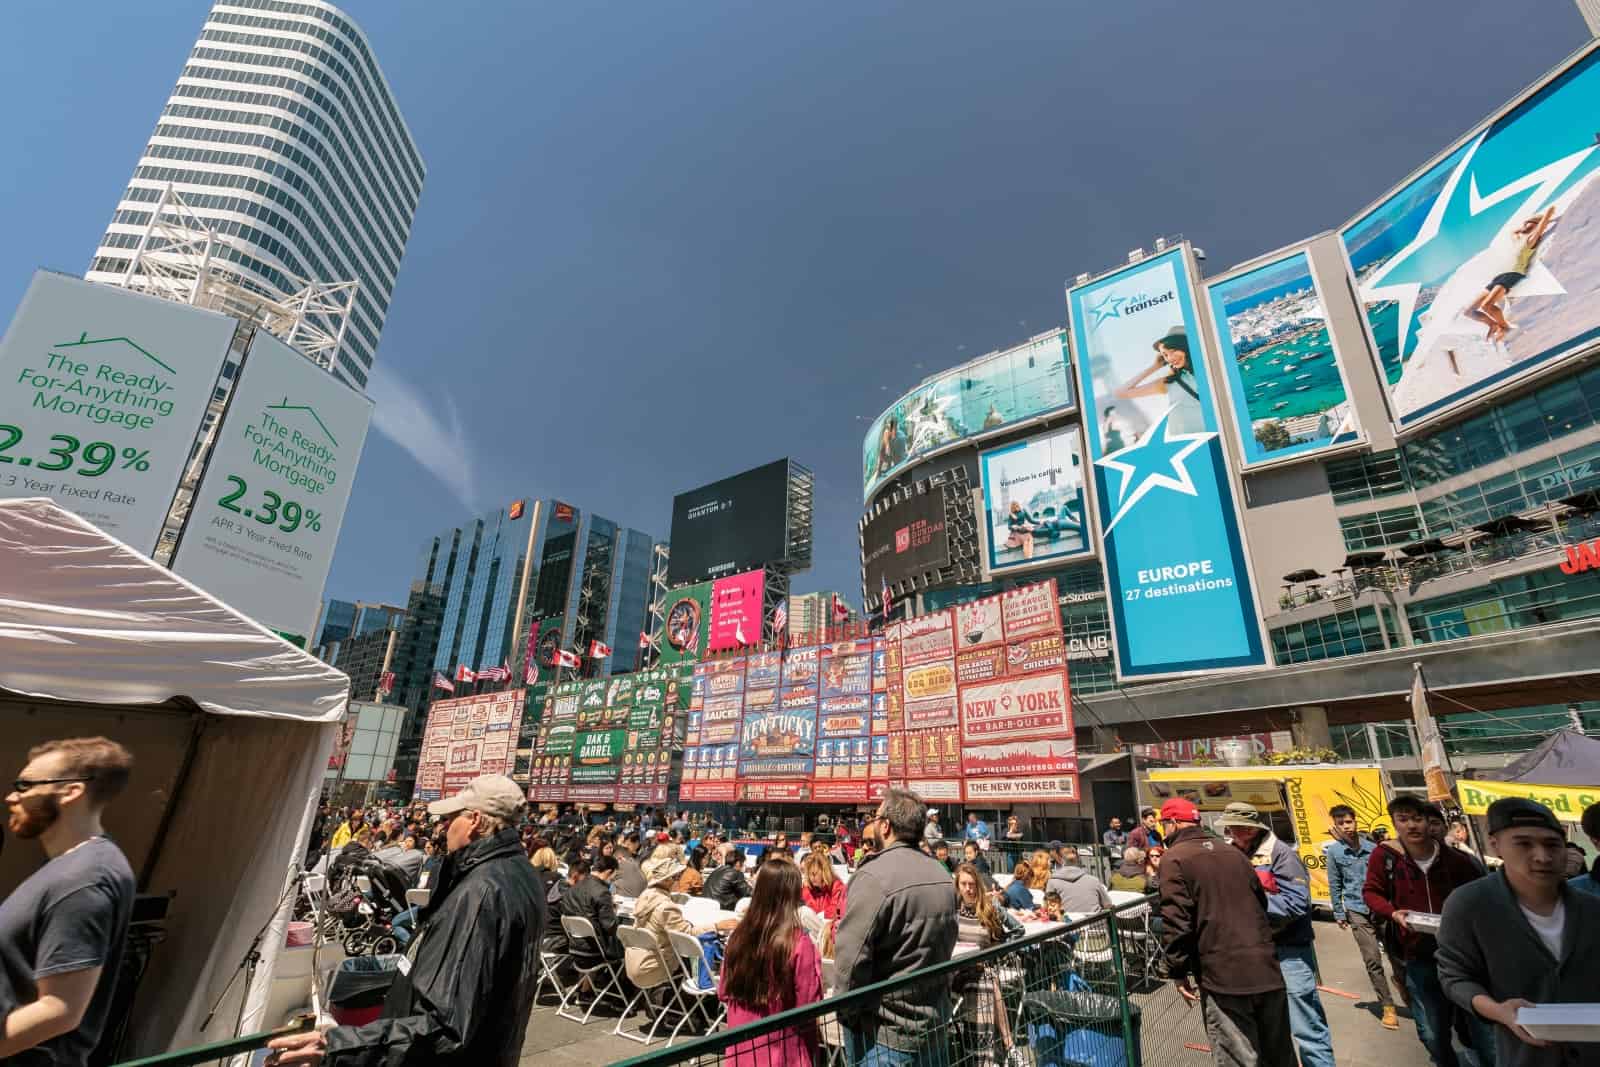 Der Dundas Square in Toronto, mit 56 Millionen Menschen jährlich sicherlich der am meisten frequentierte öffentliche Platz Kanadas. Foto vitalhuman